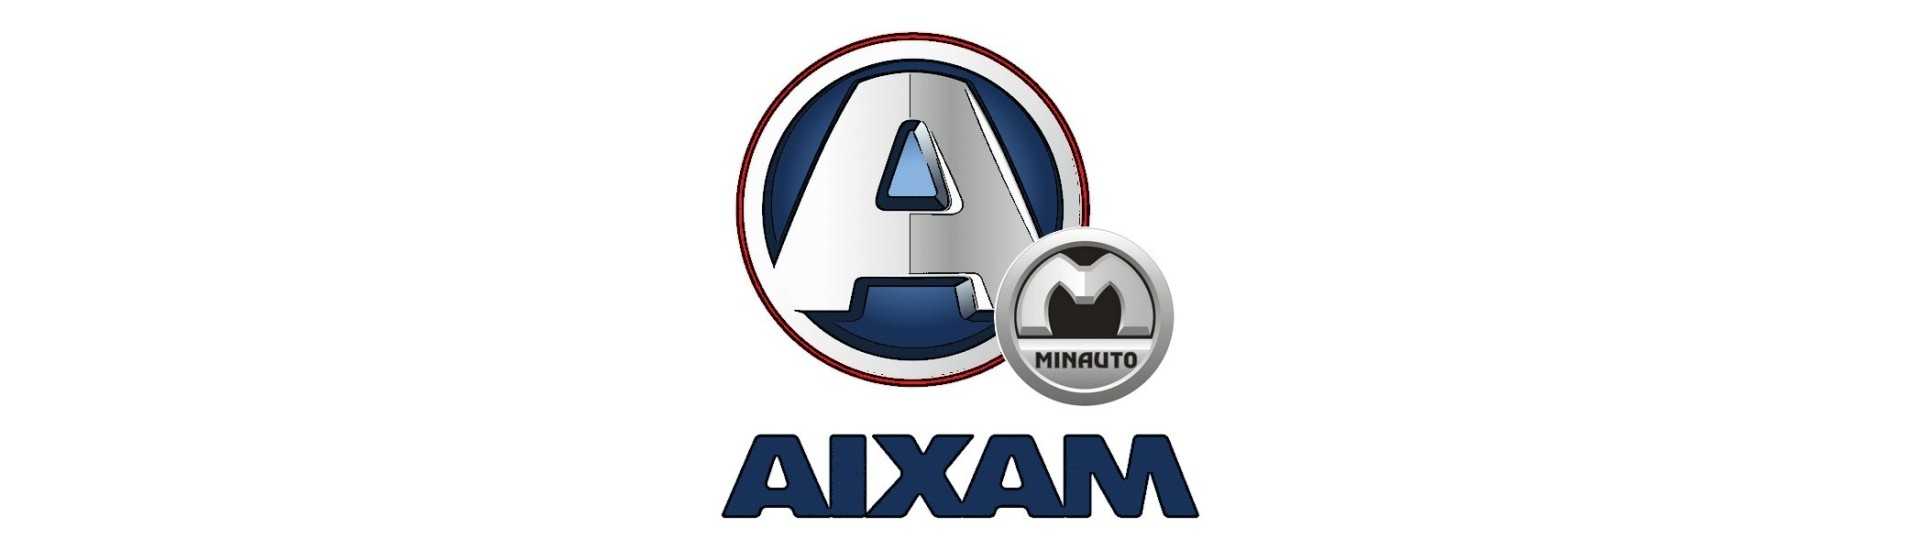 Motorradiator zum besten Preis Auto ohne Lizenz Aixam Minauto